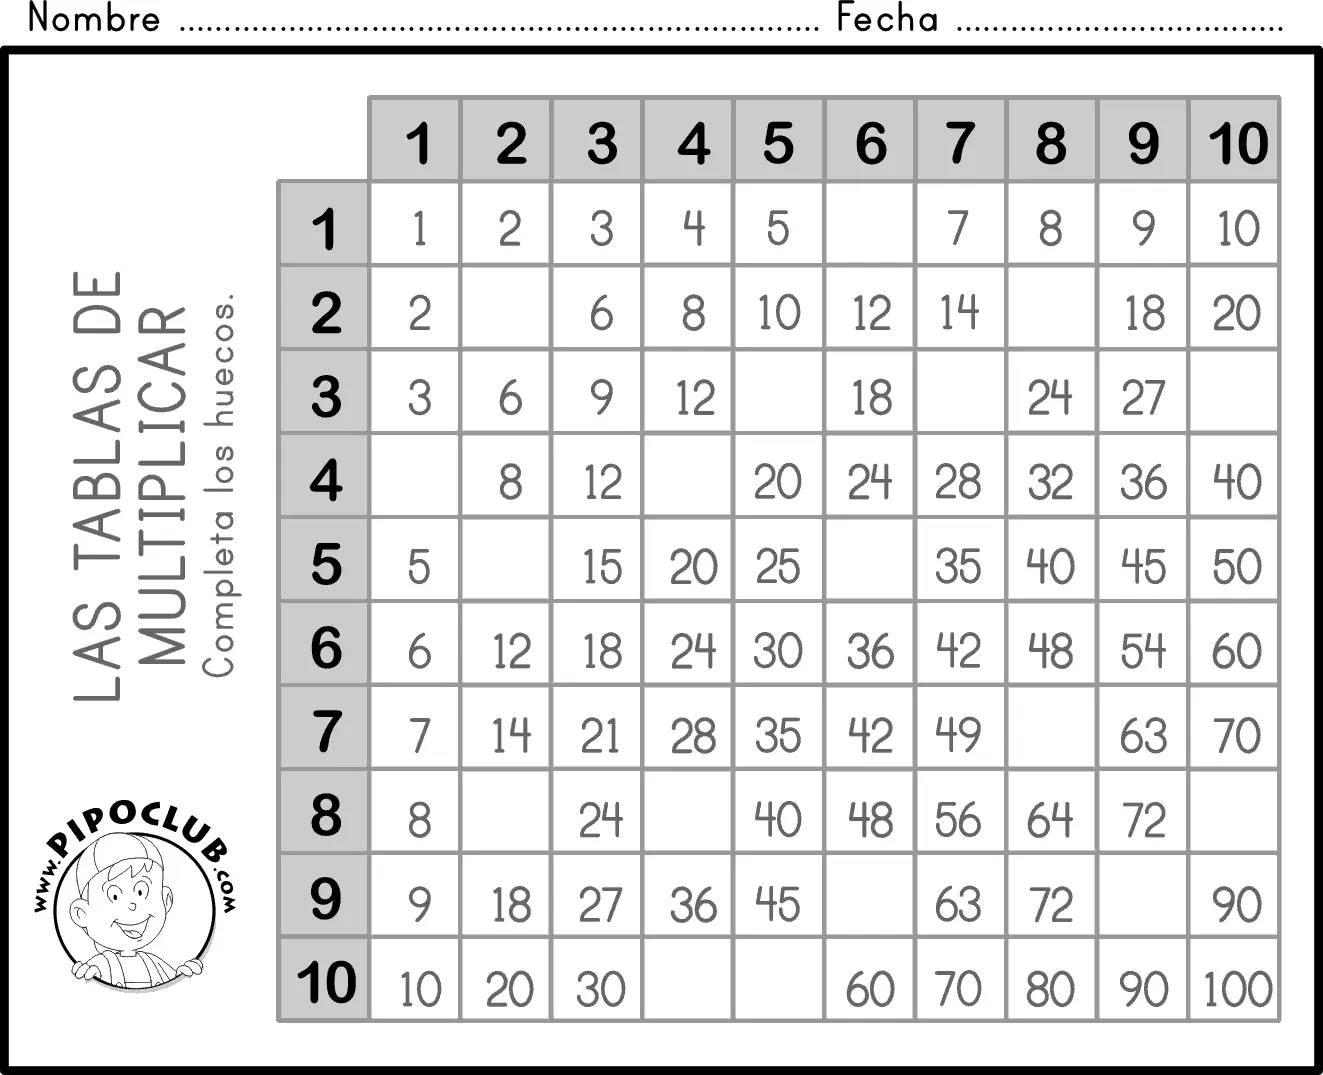 juegos de tablas de multiplicar para niños - Qué aplicación es buena para aprender las tablas de multiplicar